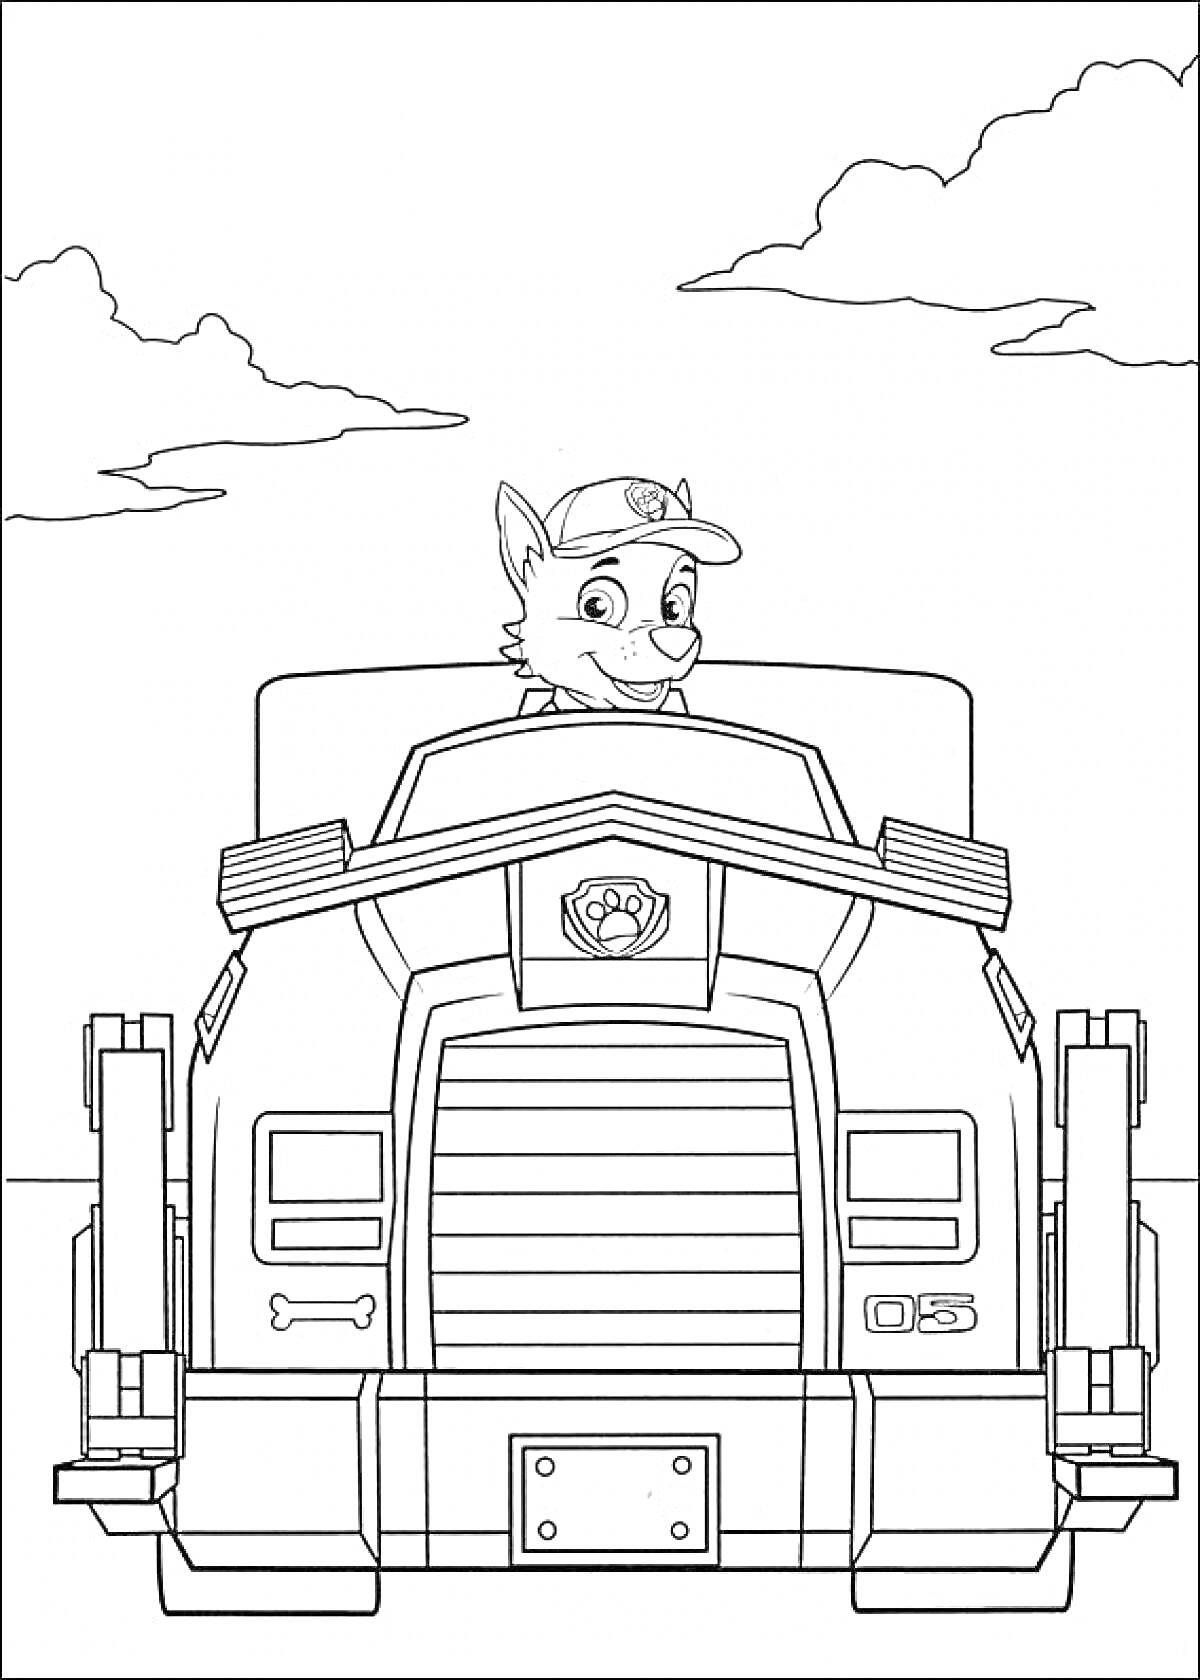 Щенок в кепке на большом грузовике с номером 05, на фоне неба с облаками